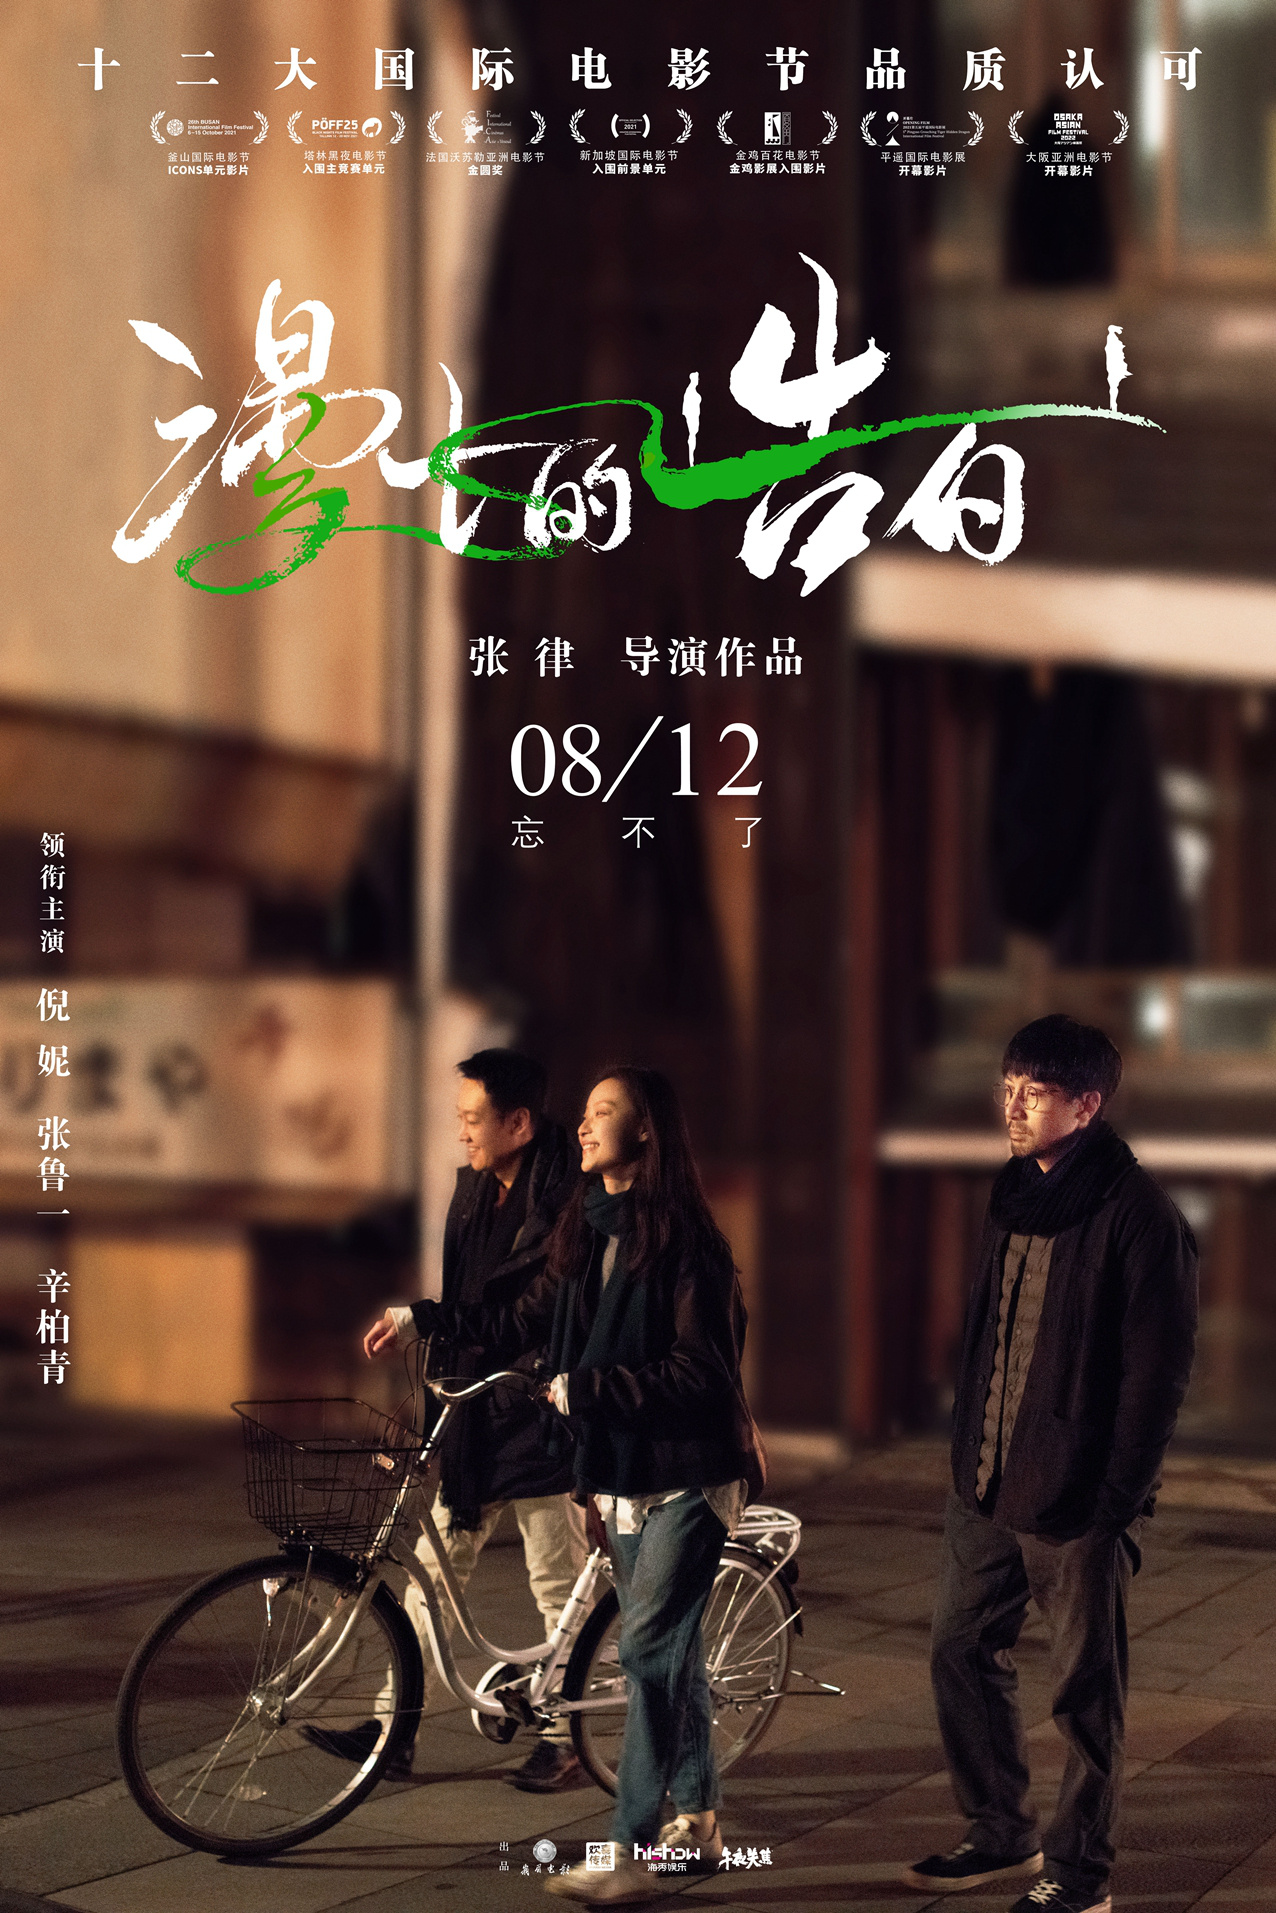 《漫长的告白》8.12上映 倪妮张鲁一道尽念念不忘